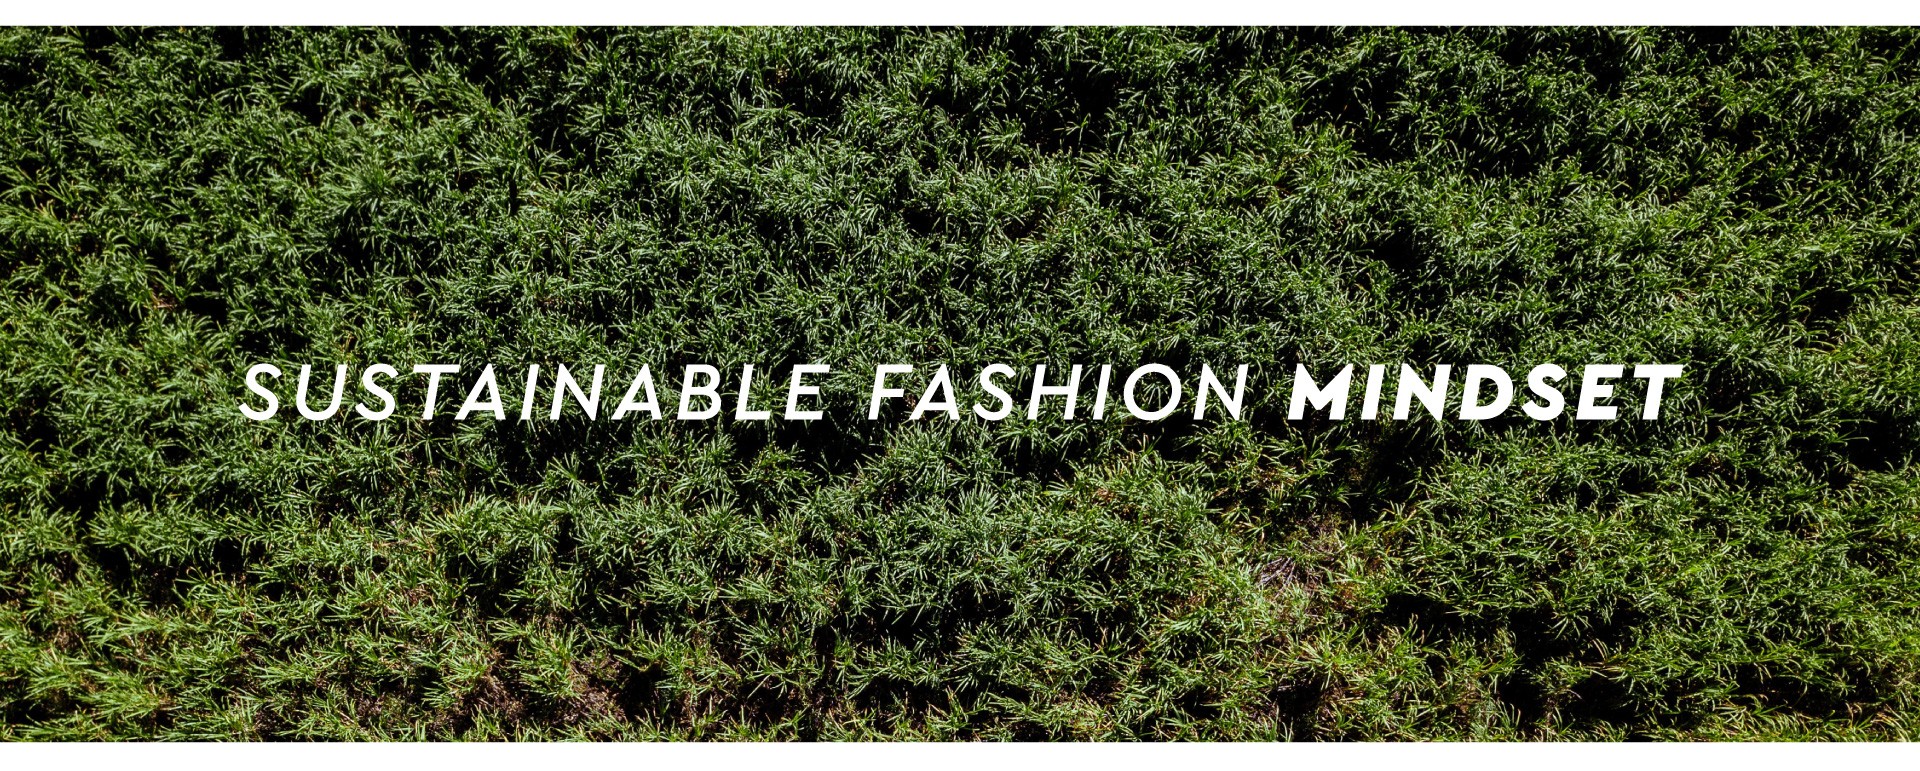 Sustainable fashion mindset